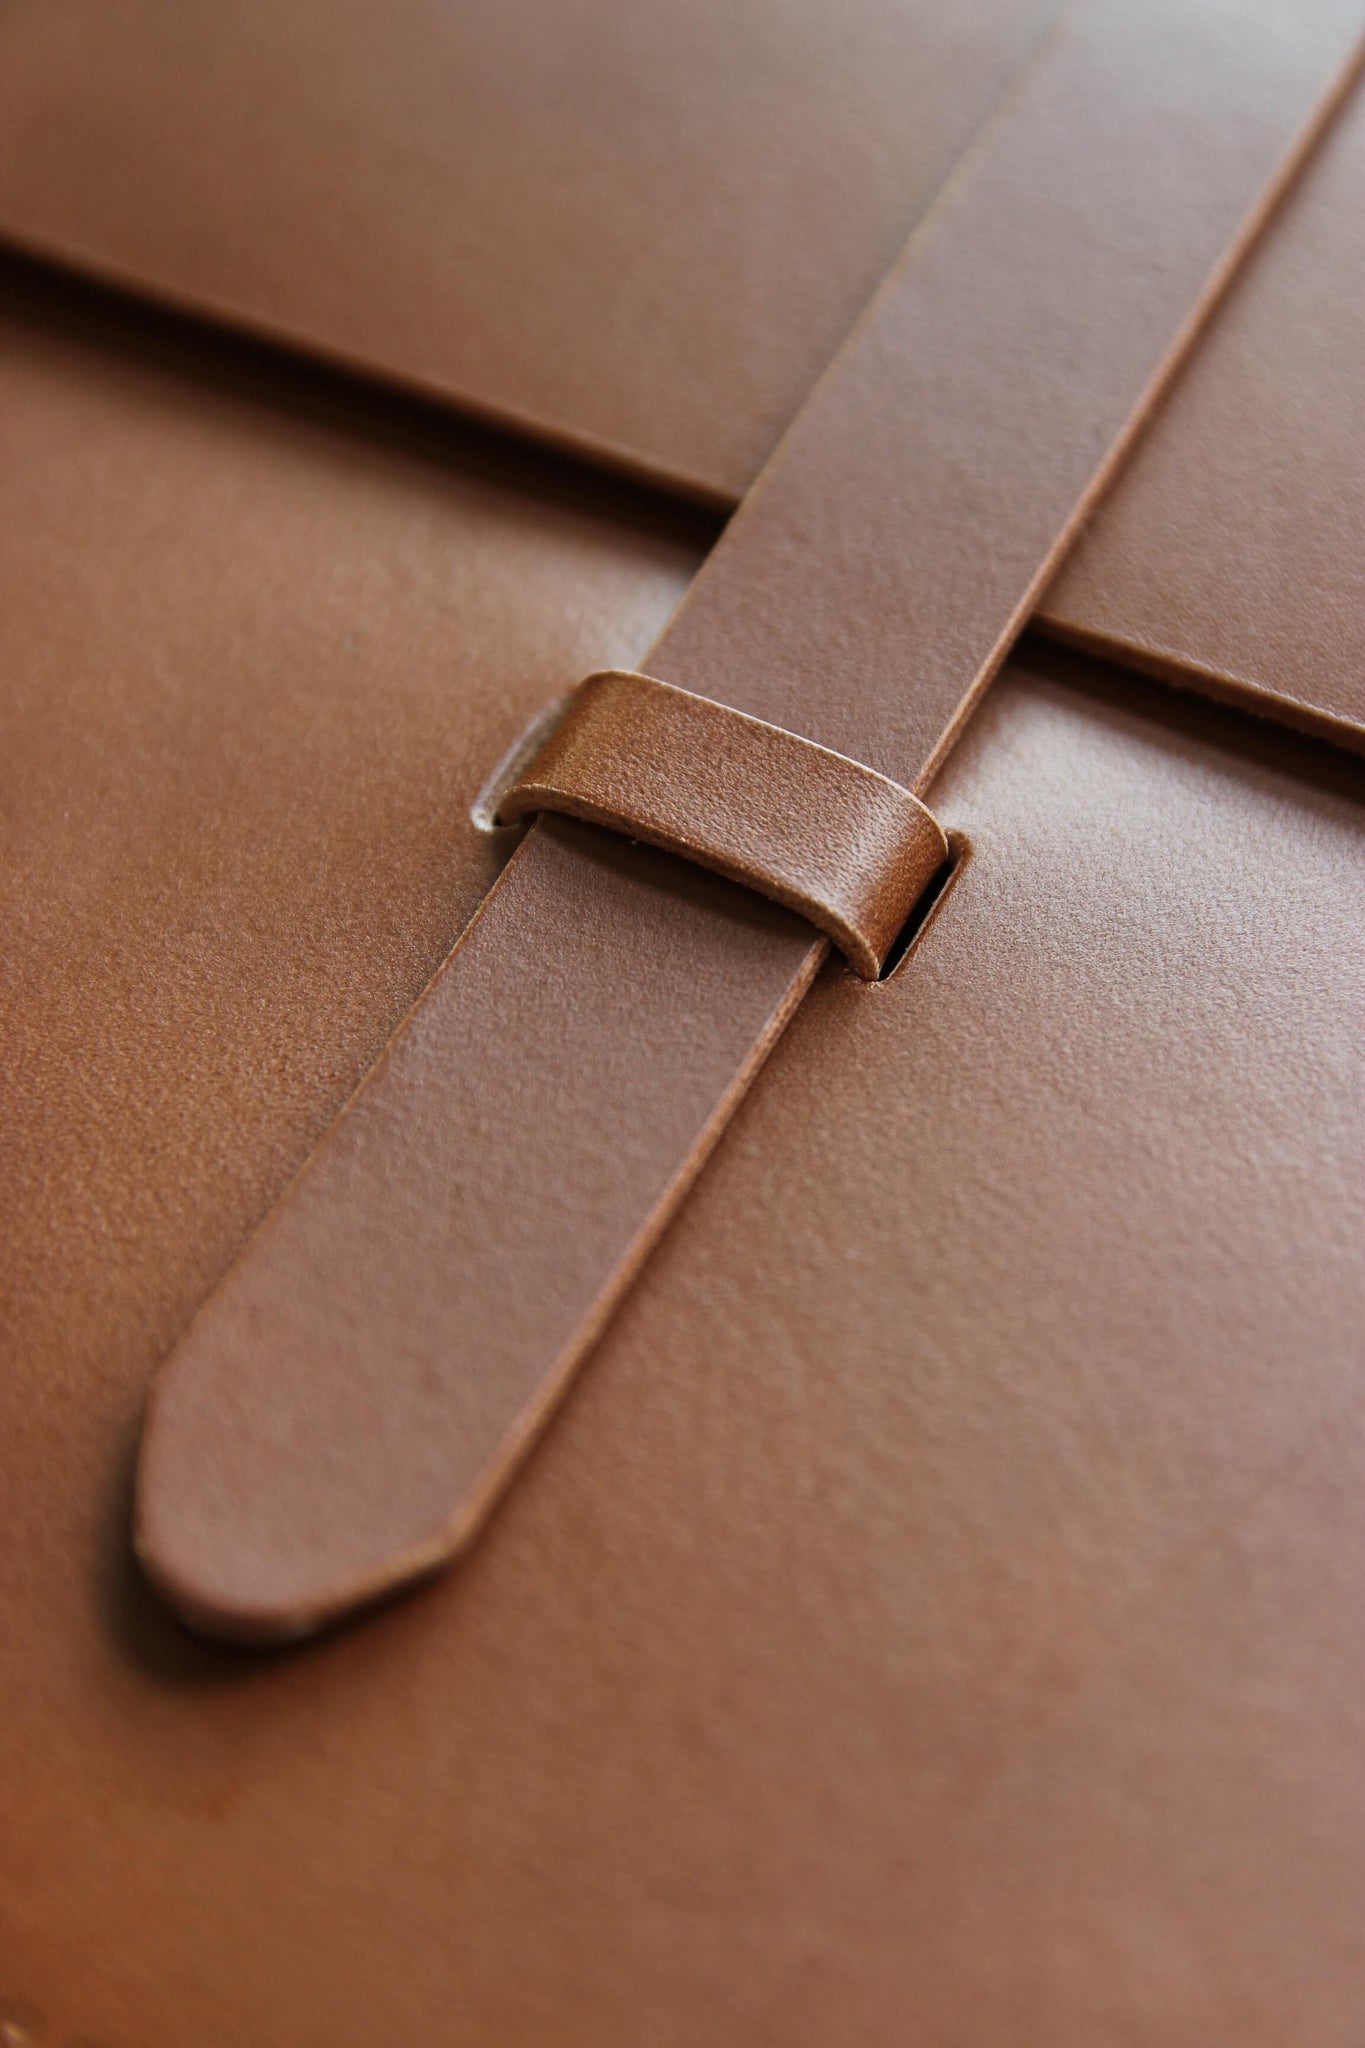 Detailaufnahme des Verschlusses einer MacBook Hülle aus Leder in Braun.